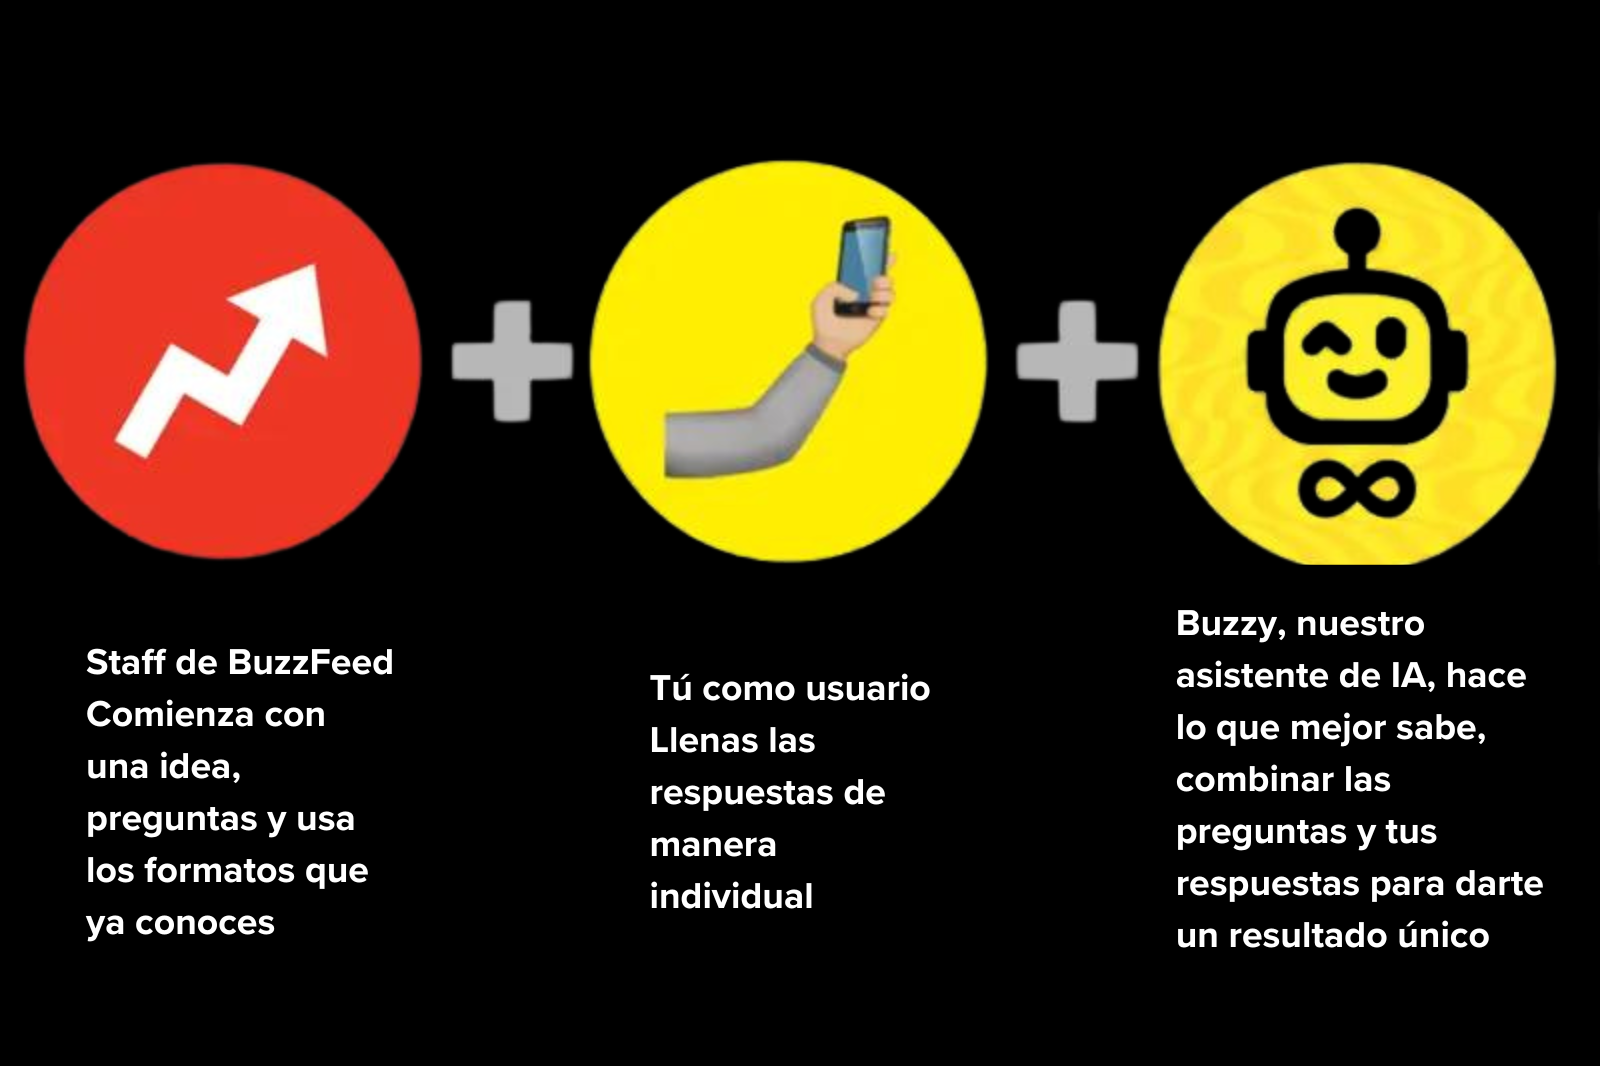 Gráfico explicativo de BuzzFeed con tres pasos: idea de staff, usuario con celular y asistente IA Buzzy combinando todo para resultados